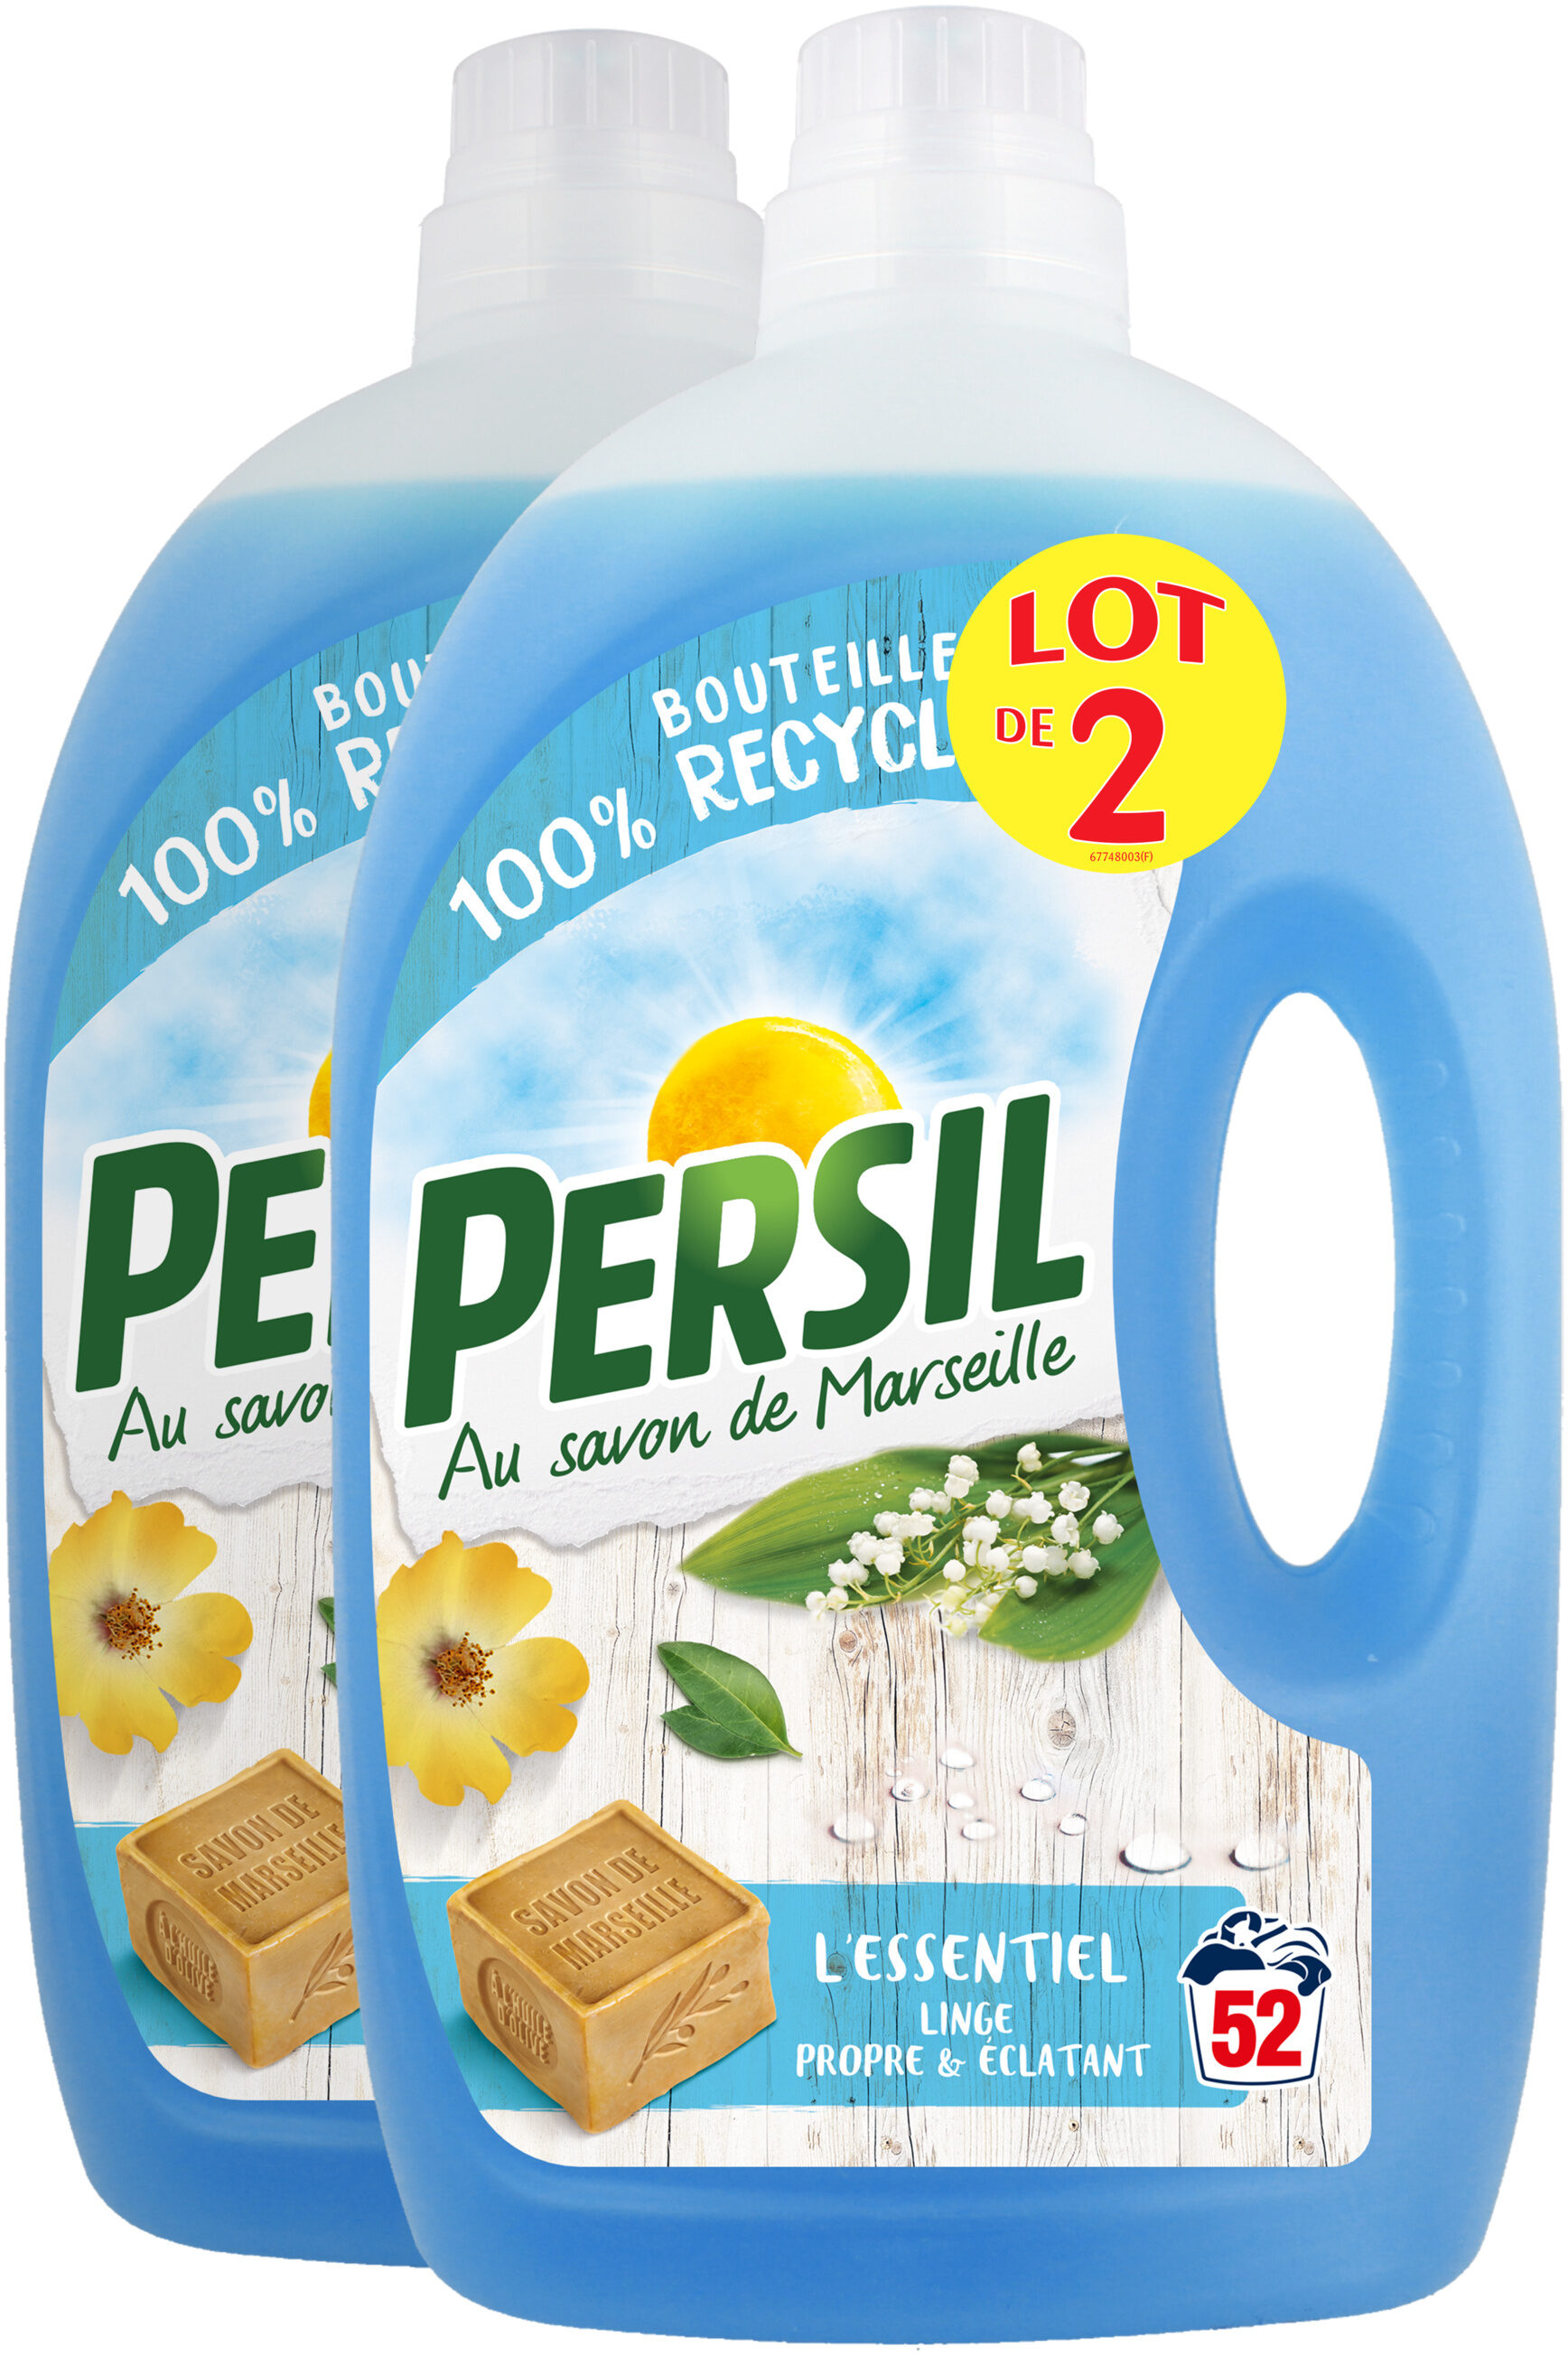 Persil Lessive Liquide l'Essentiel 2,6l 52 Lavages Lot de 2 - Product - fr